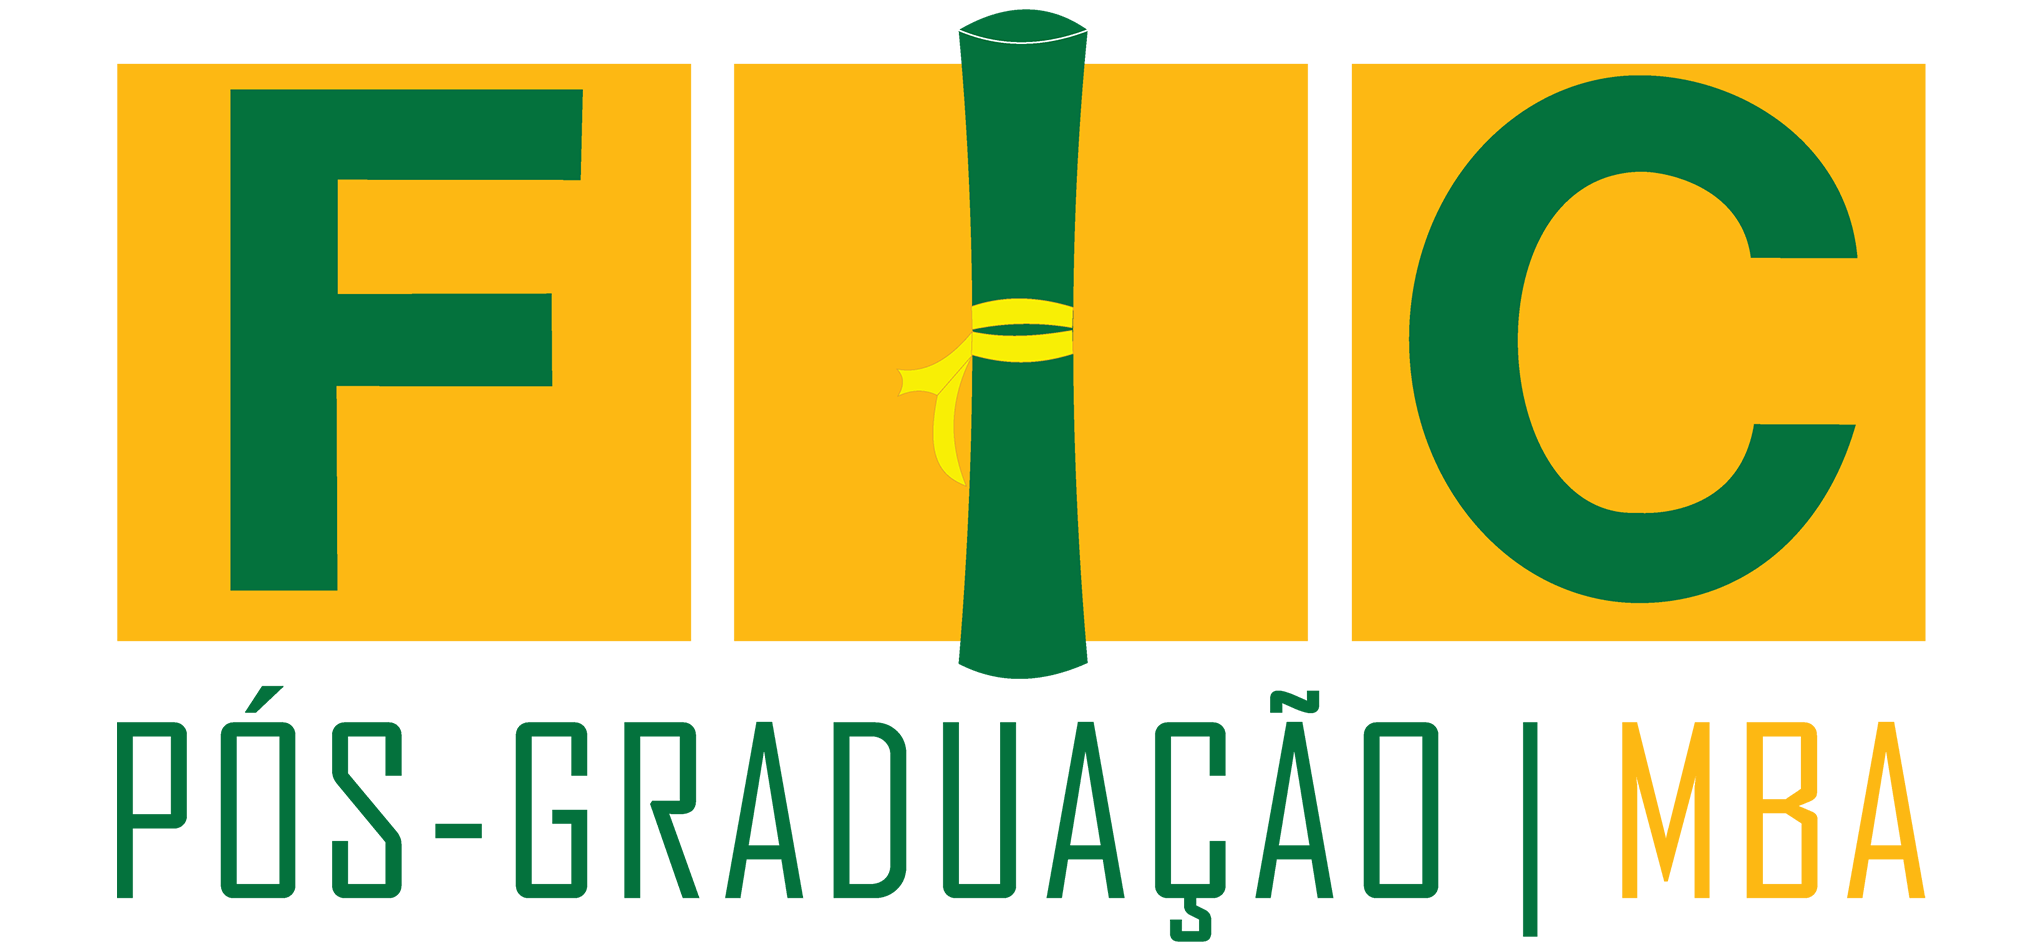 FIC Redenção - Faculdade Integrada Carajás